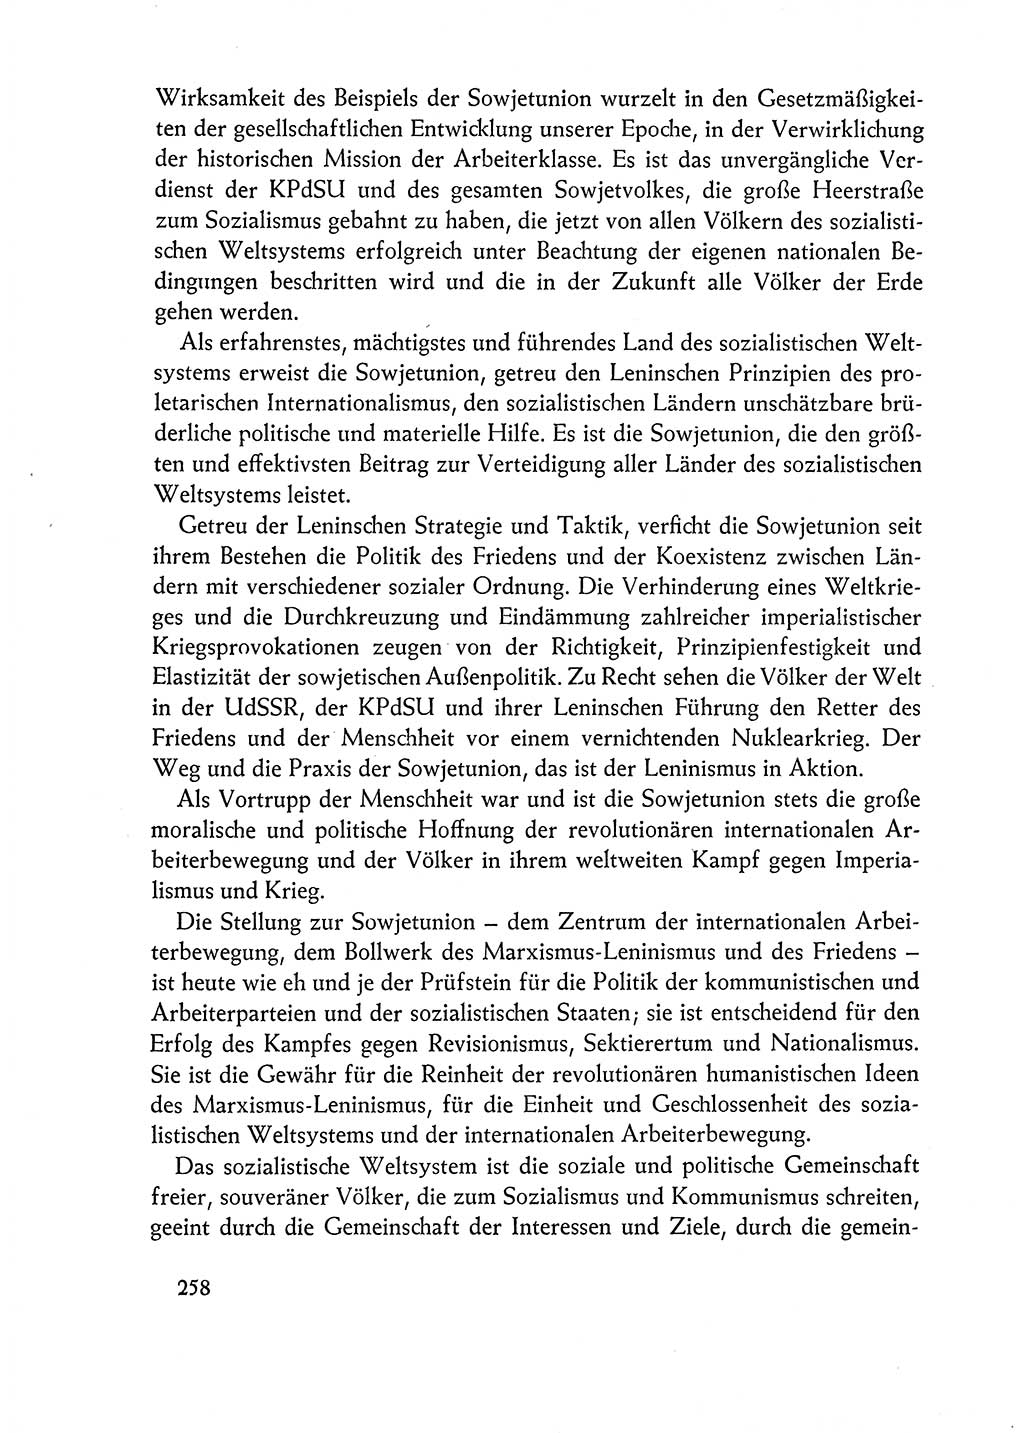 Dokumente der Sozialistischen Einheitspartei Deutschlands (SED) [Deutsche Demokratische Republik (DDR)] 1962-1963, Seite 258 (Dok. SED DDR 1962-1963, S. 258)